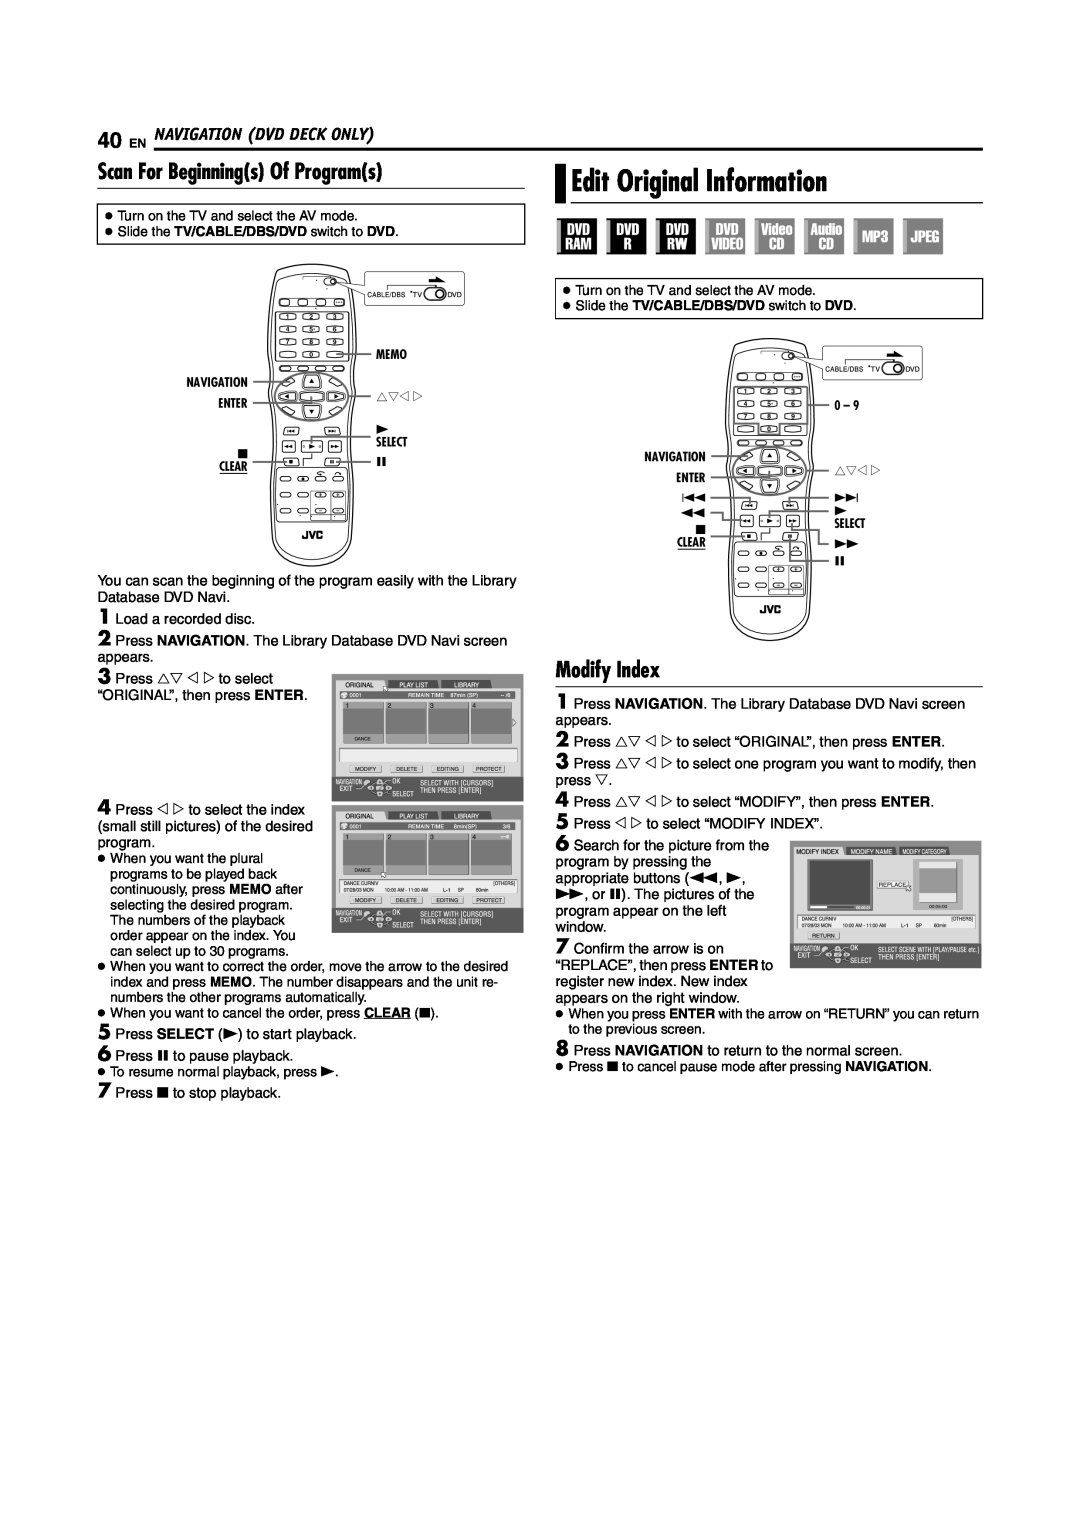 JVC SR-MV45U manual Scan For Beginnings Of Programs, Edit Original Information, Modify Index, En Navigation Dvd Deck Only 